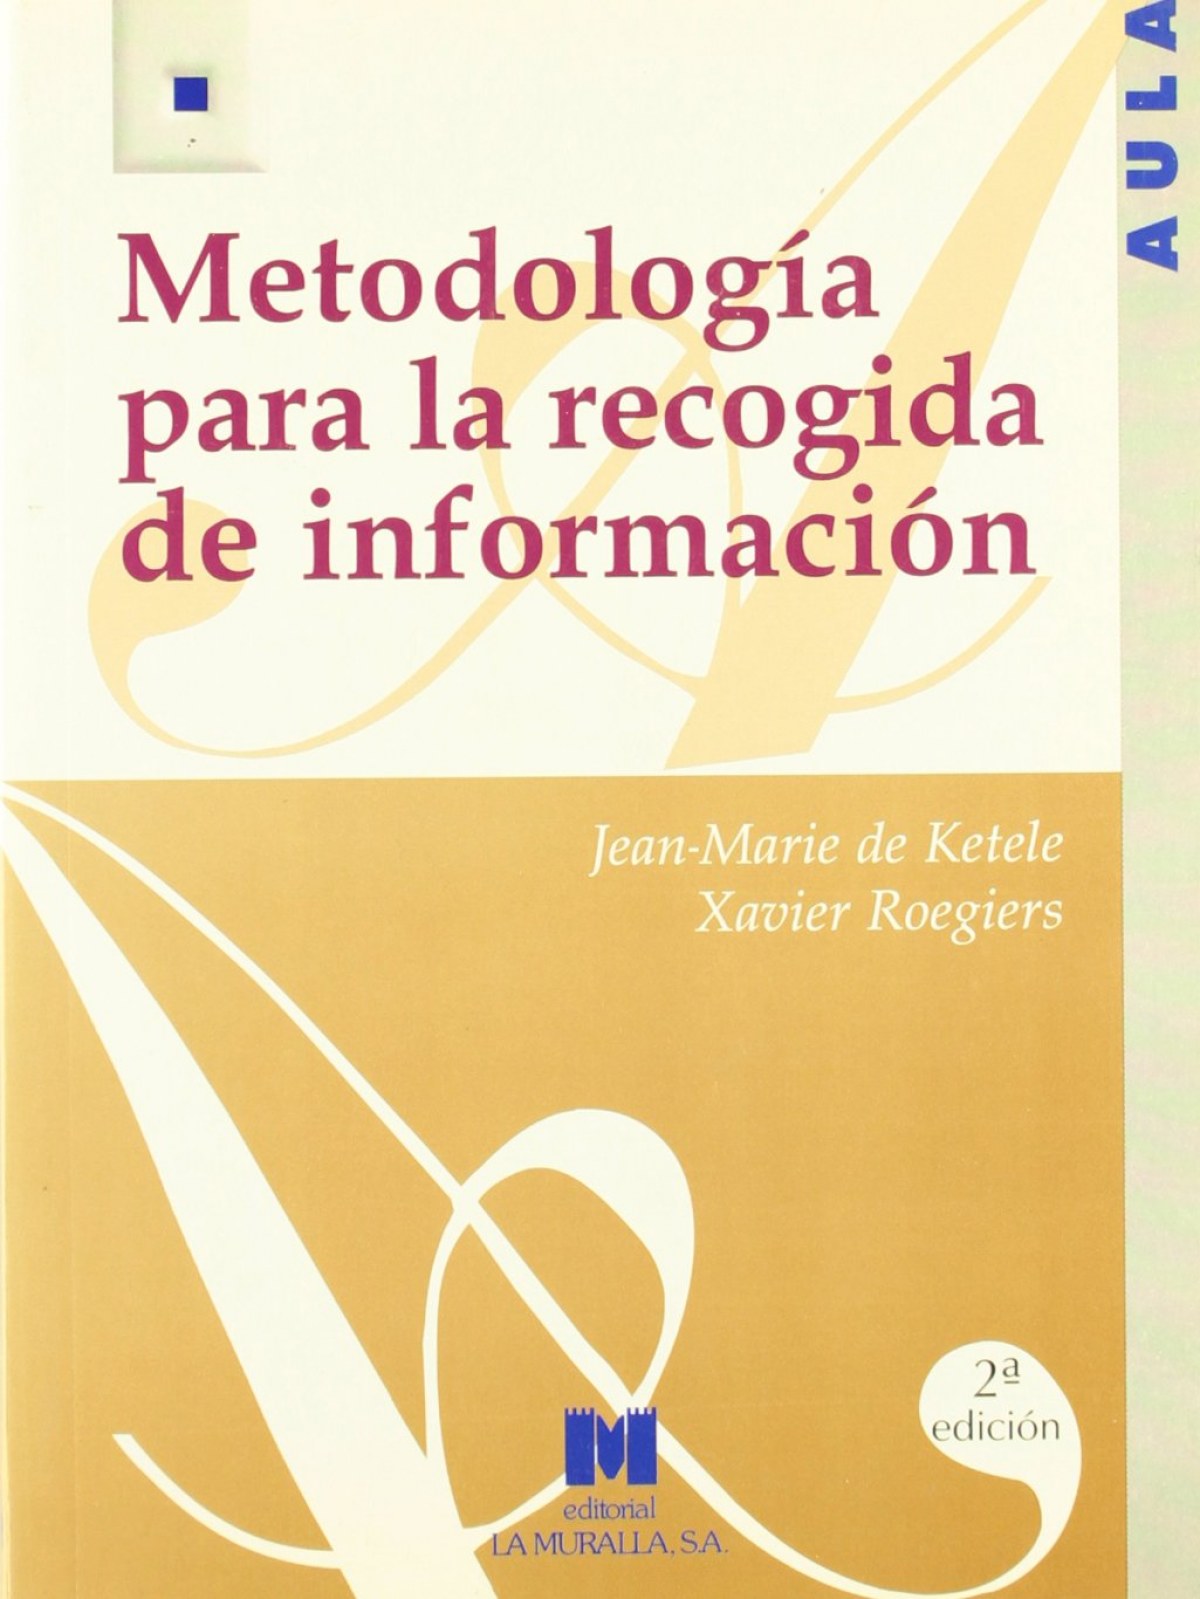 Metodología para la recogida de información - Jean-Marie de Ketele, Xavier Roegiers